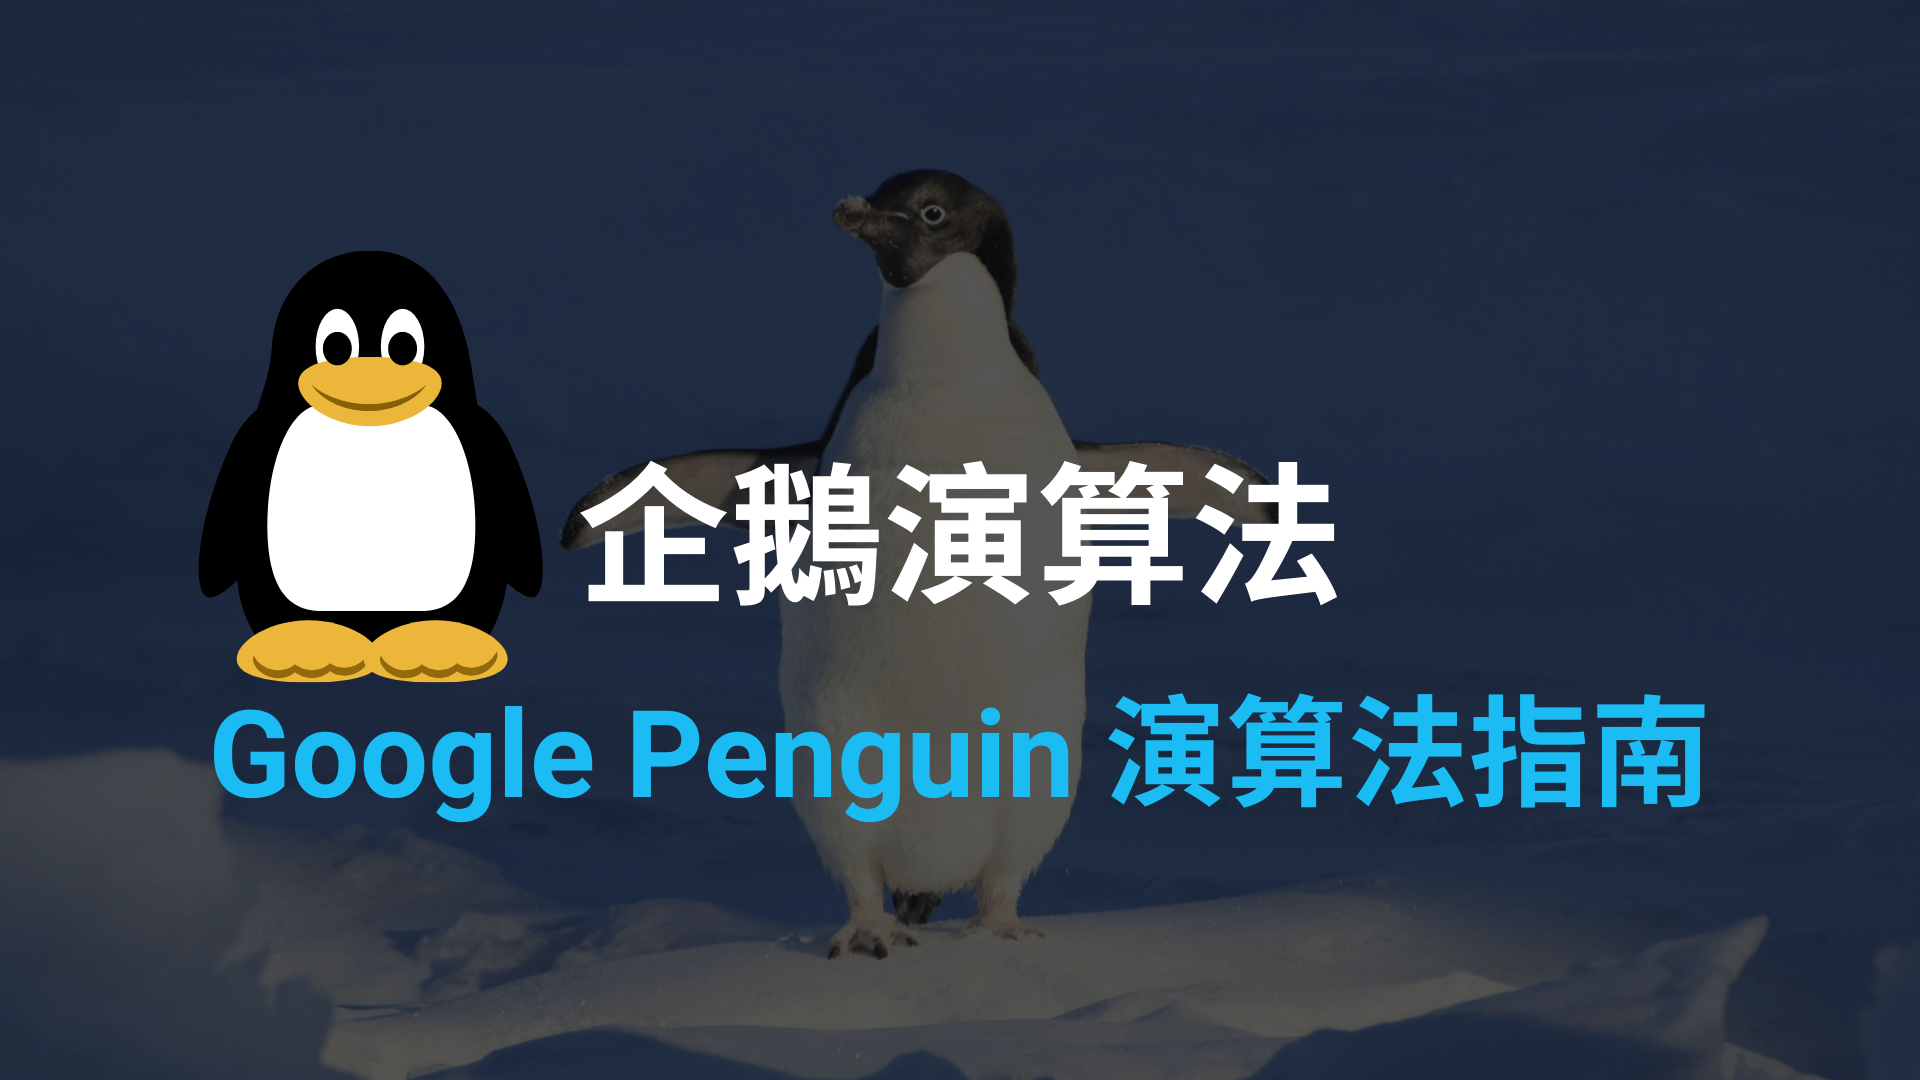 Google企鹅演算法